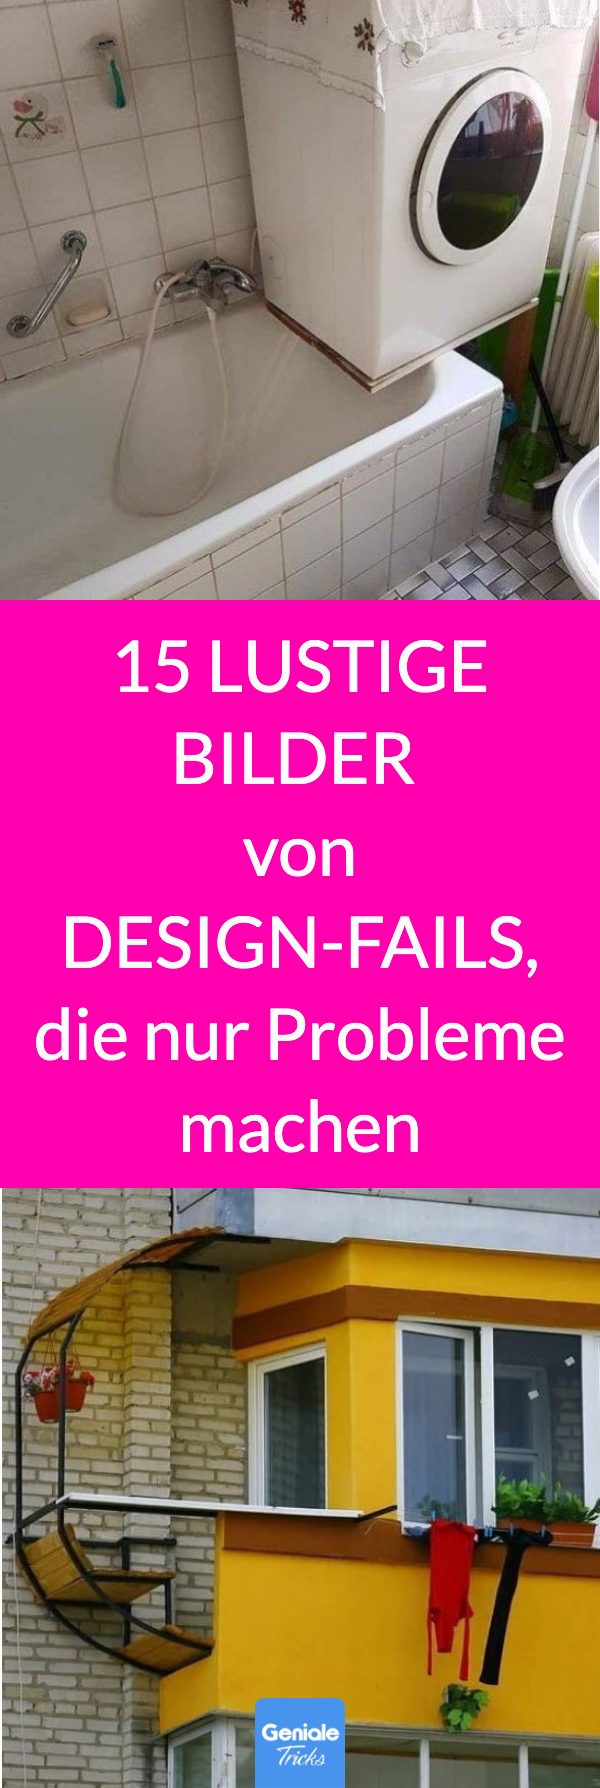 15 lustige Design-Fails, die nur Probleme machen